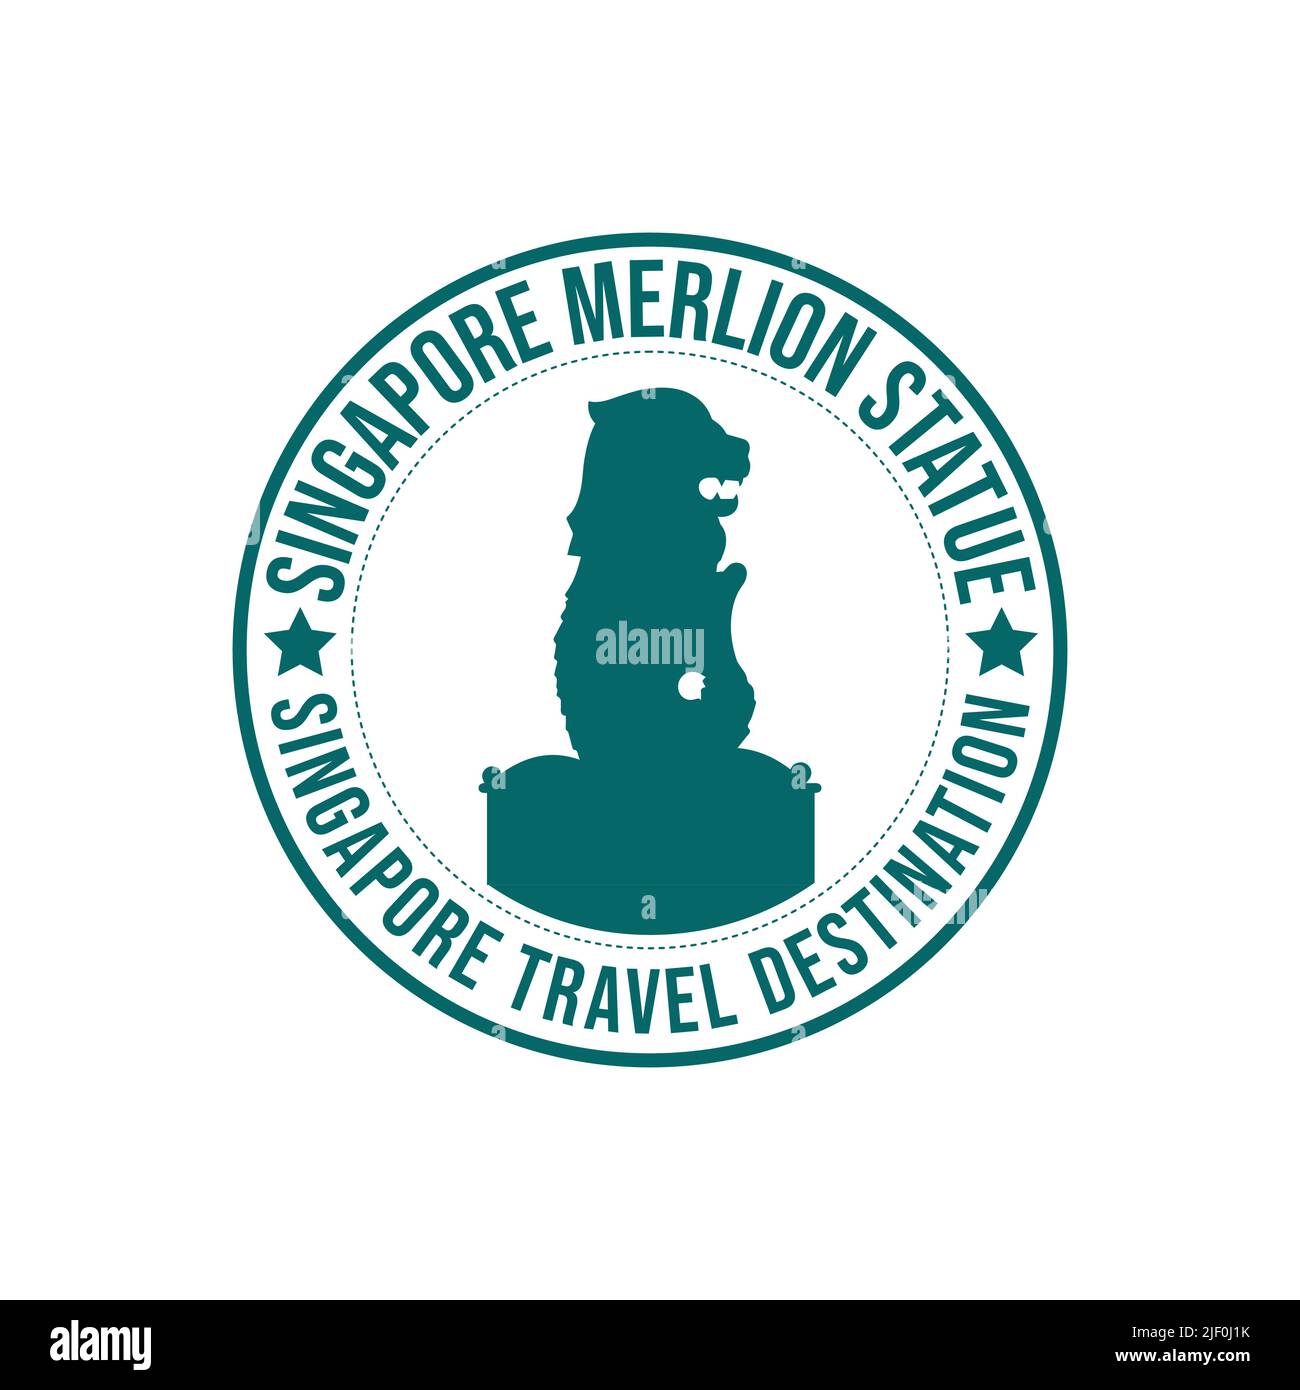 Timbre en caoutchouc avec le texte la destination de voyage de la statue de Merlion inscrit à l'intérieur du timbre. Singapour le Merlion historique Statue architecture voyage Illustration de Vecteur